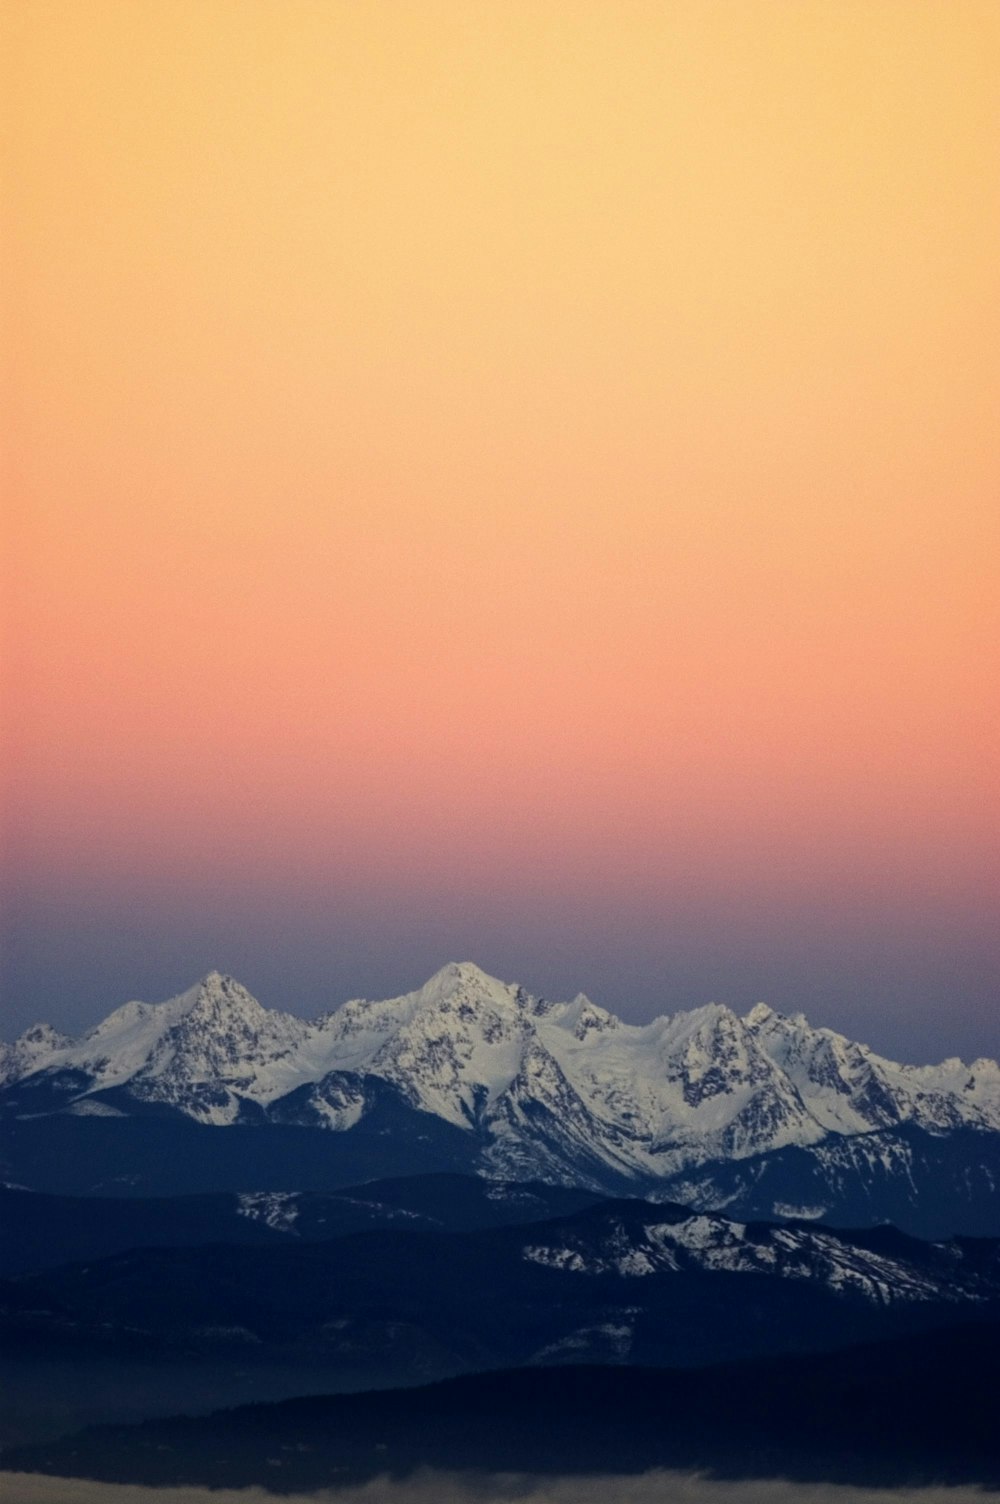 white mountains under orange sky